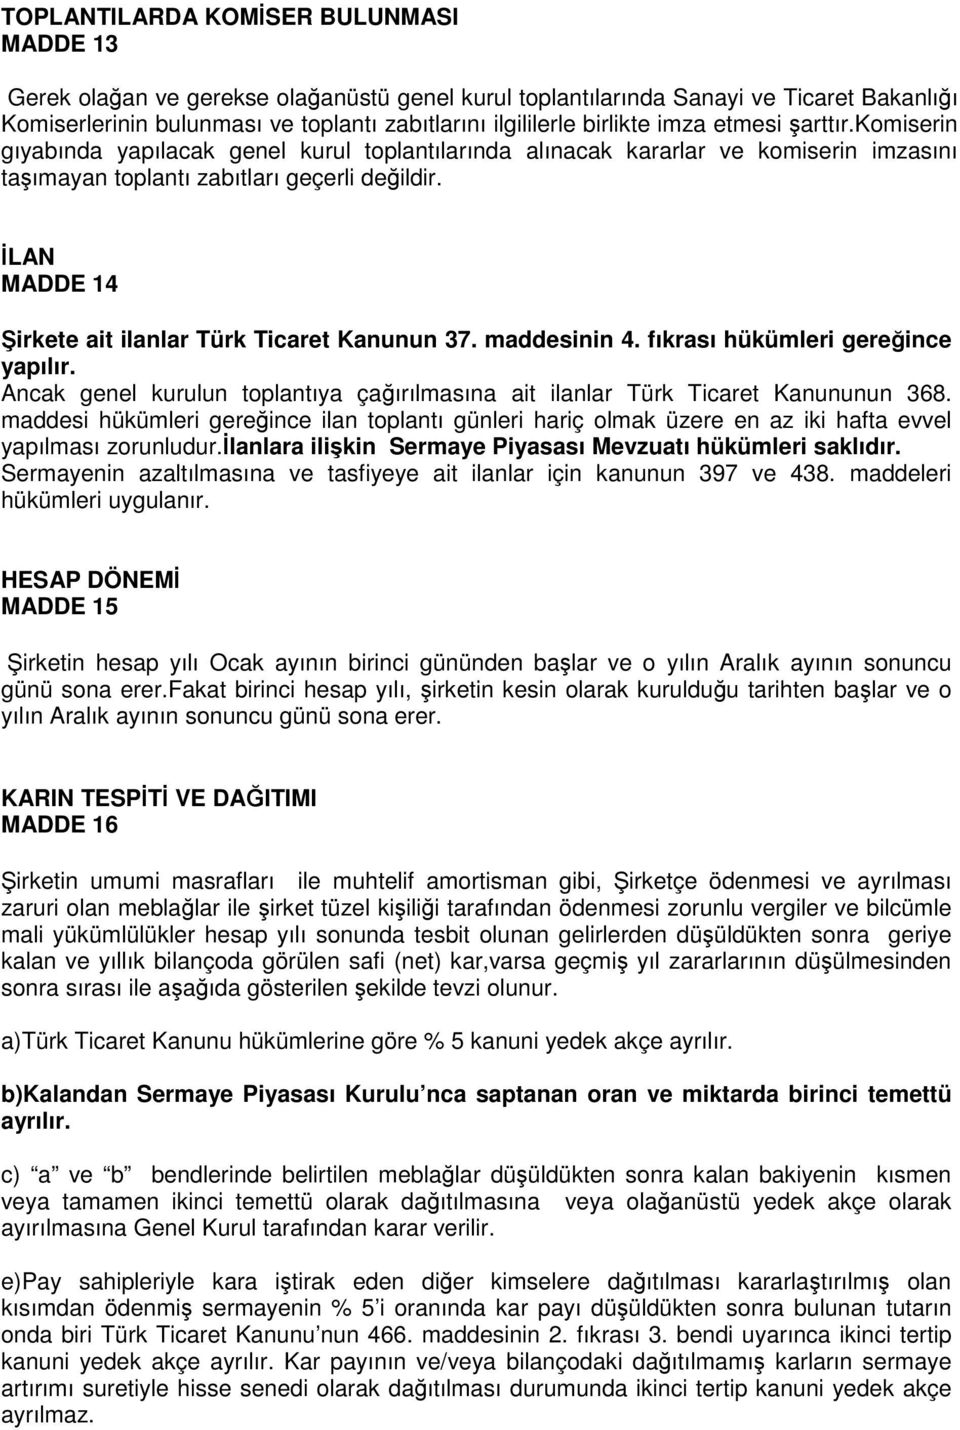 LAN MADDE 14 irkete ait ilanlar Türk Ticaret Kanunun 37. maddesinin 4. fıkrası hükümleri gereince yapılır. Ancak genel kurulun toplantıya çaırılmasına ait ilanlar Türk Ticaret Kanununun 368.